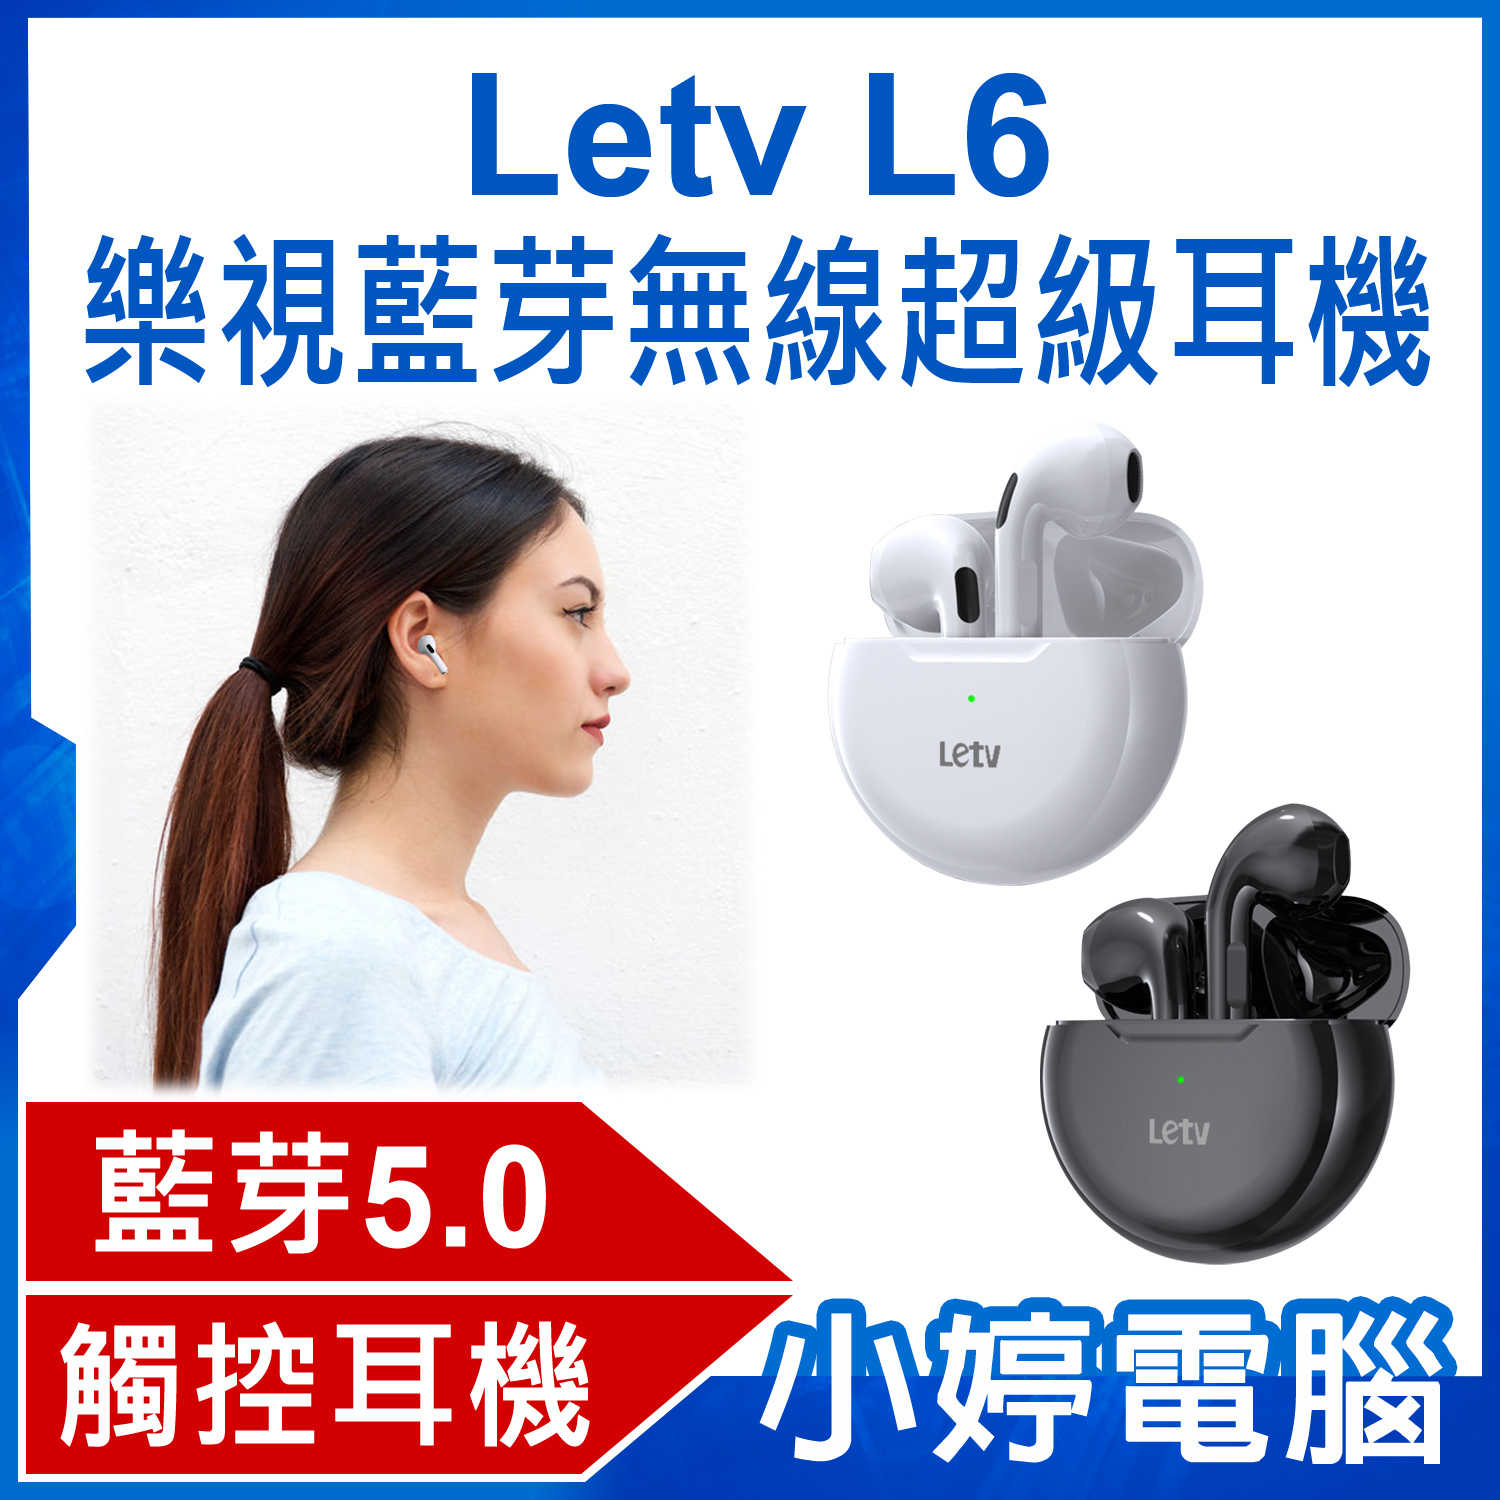 【小婷電腦】Letv L6 樂視藍芽無線超級耳機 藍芽5.0 HIFI音質 智慧觸控 輕量便攜 續航持久